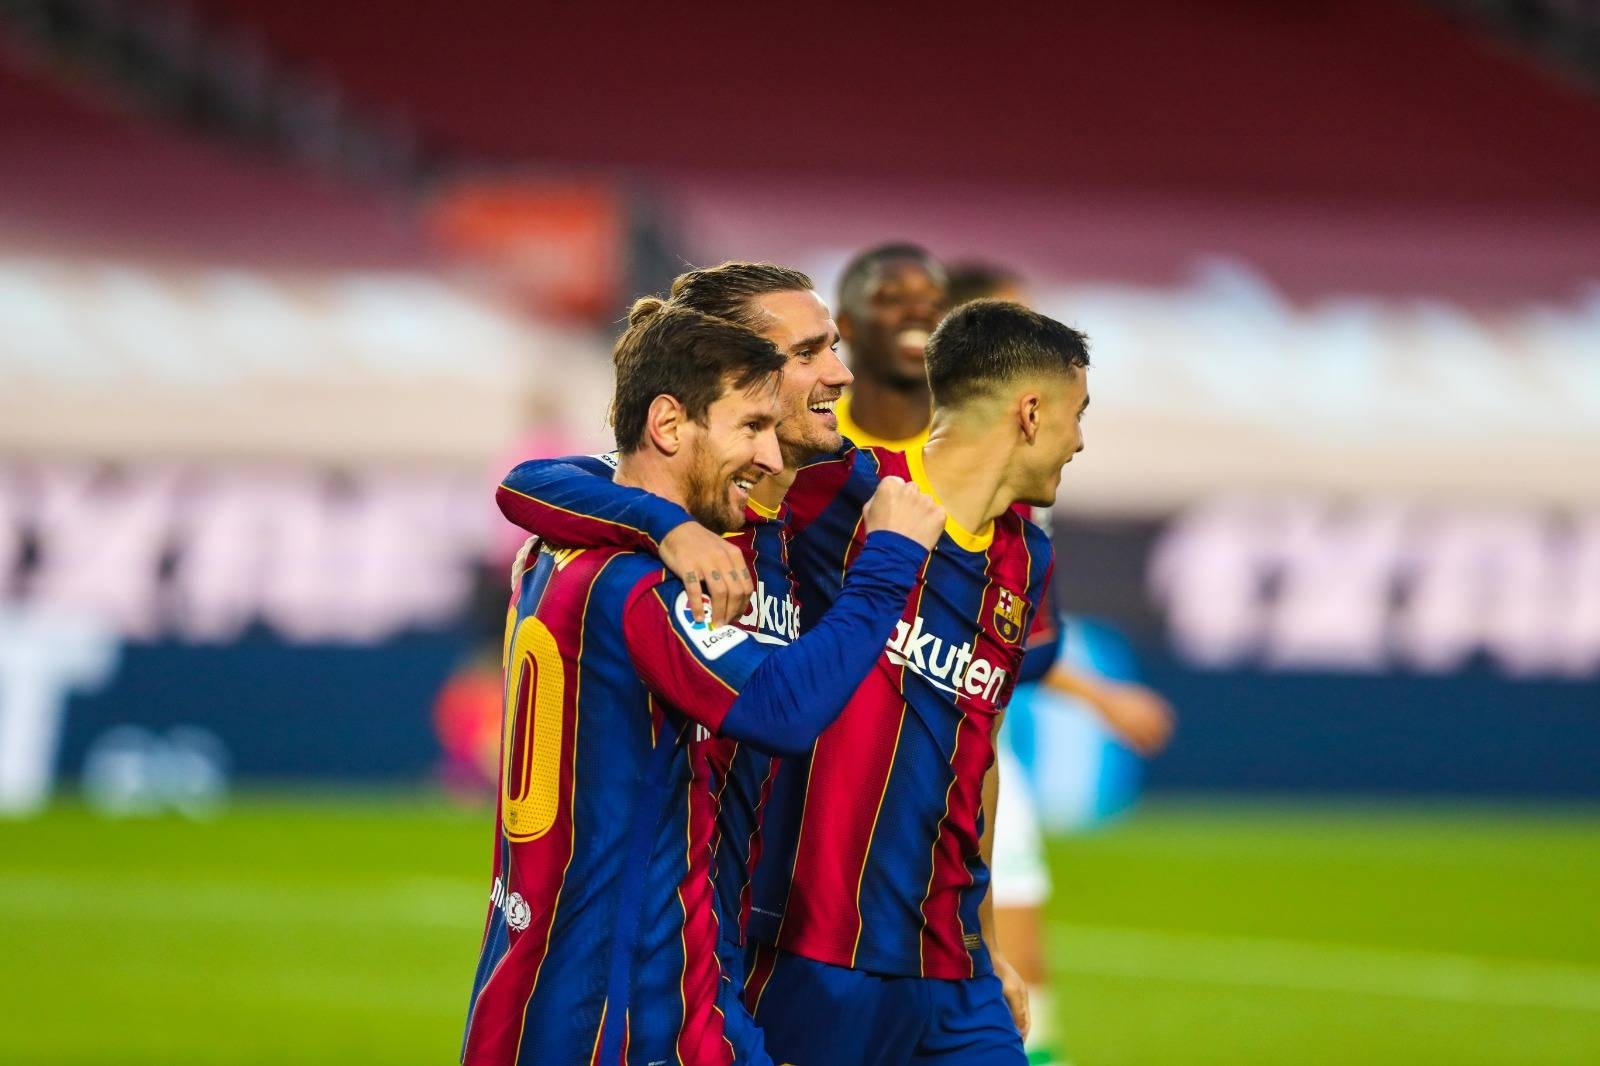 Foto: Twitter Barcelona FC